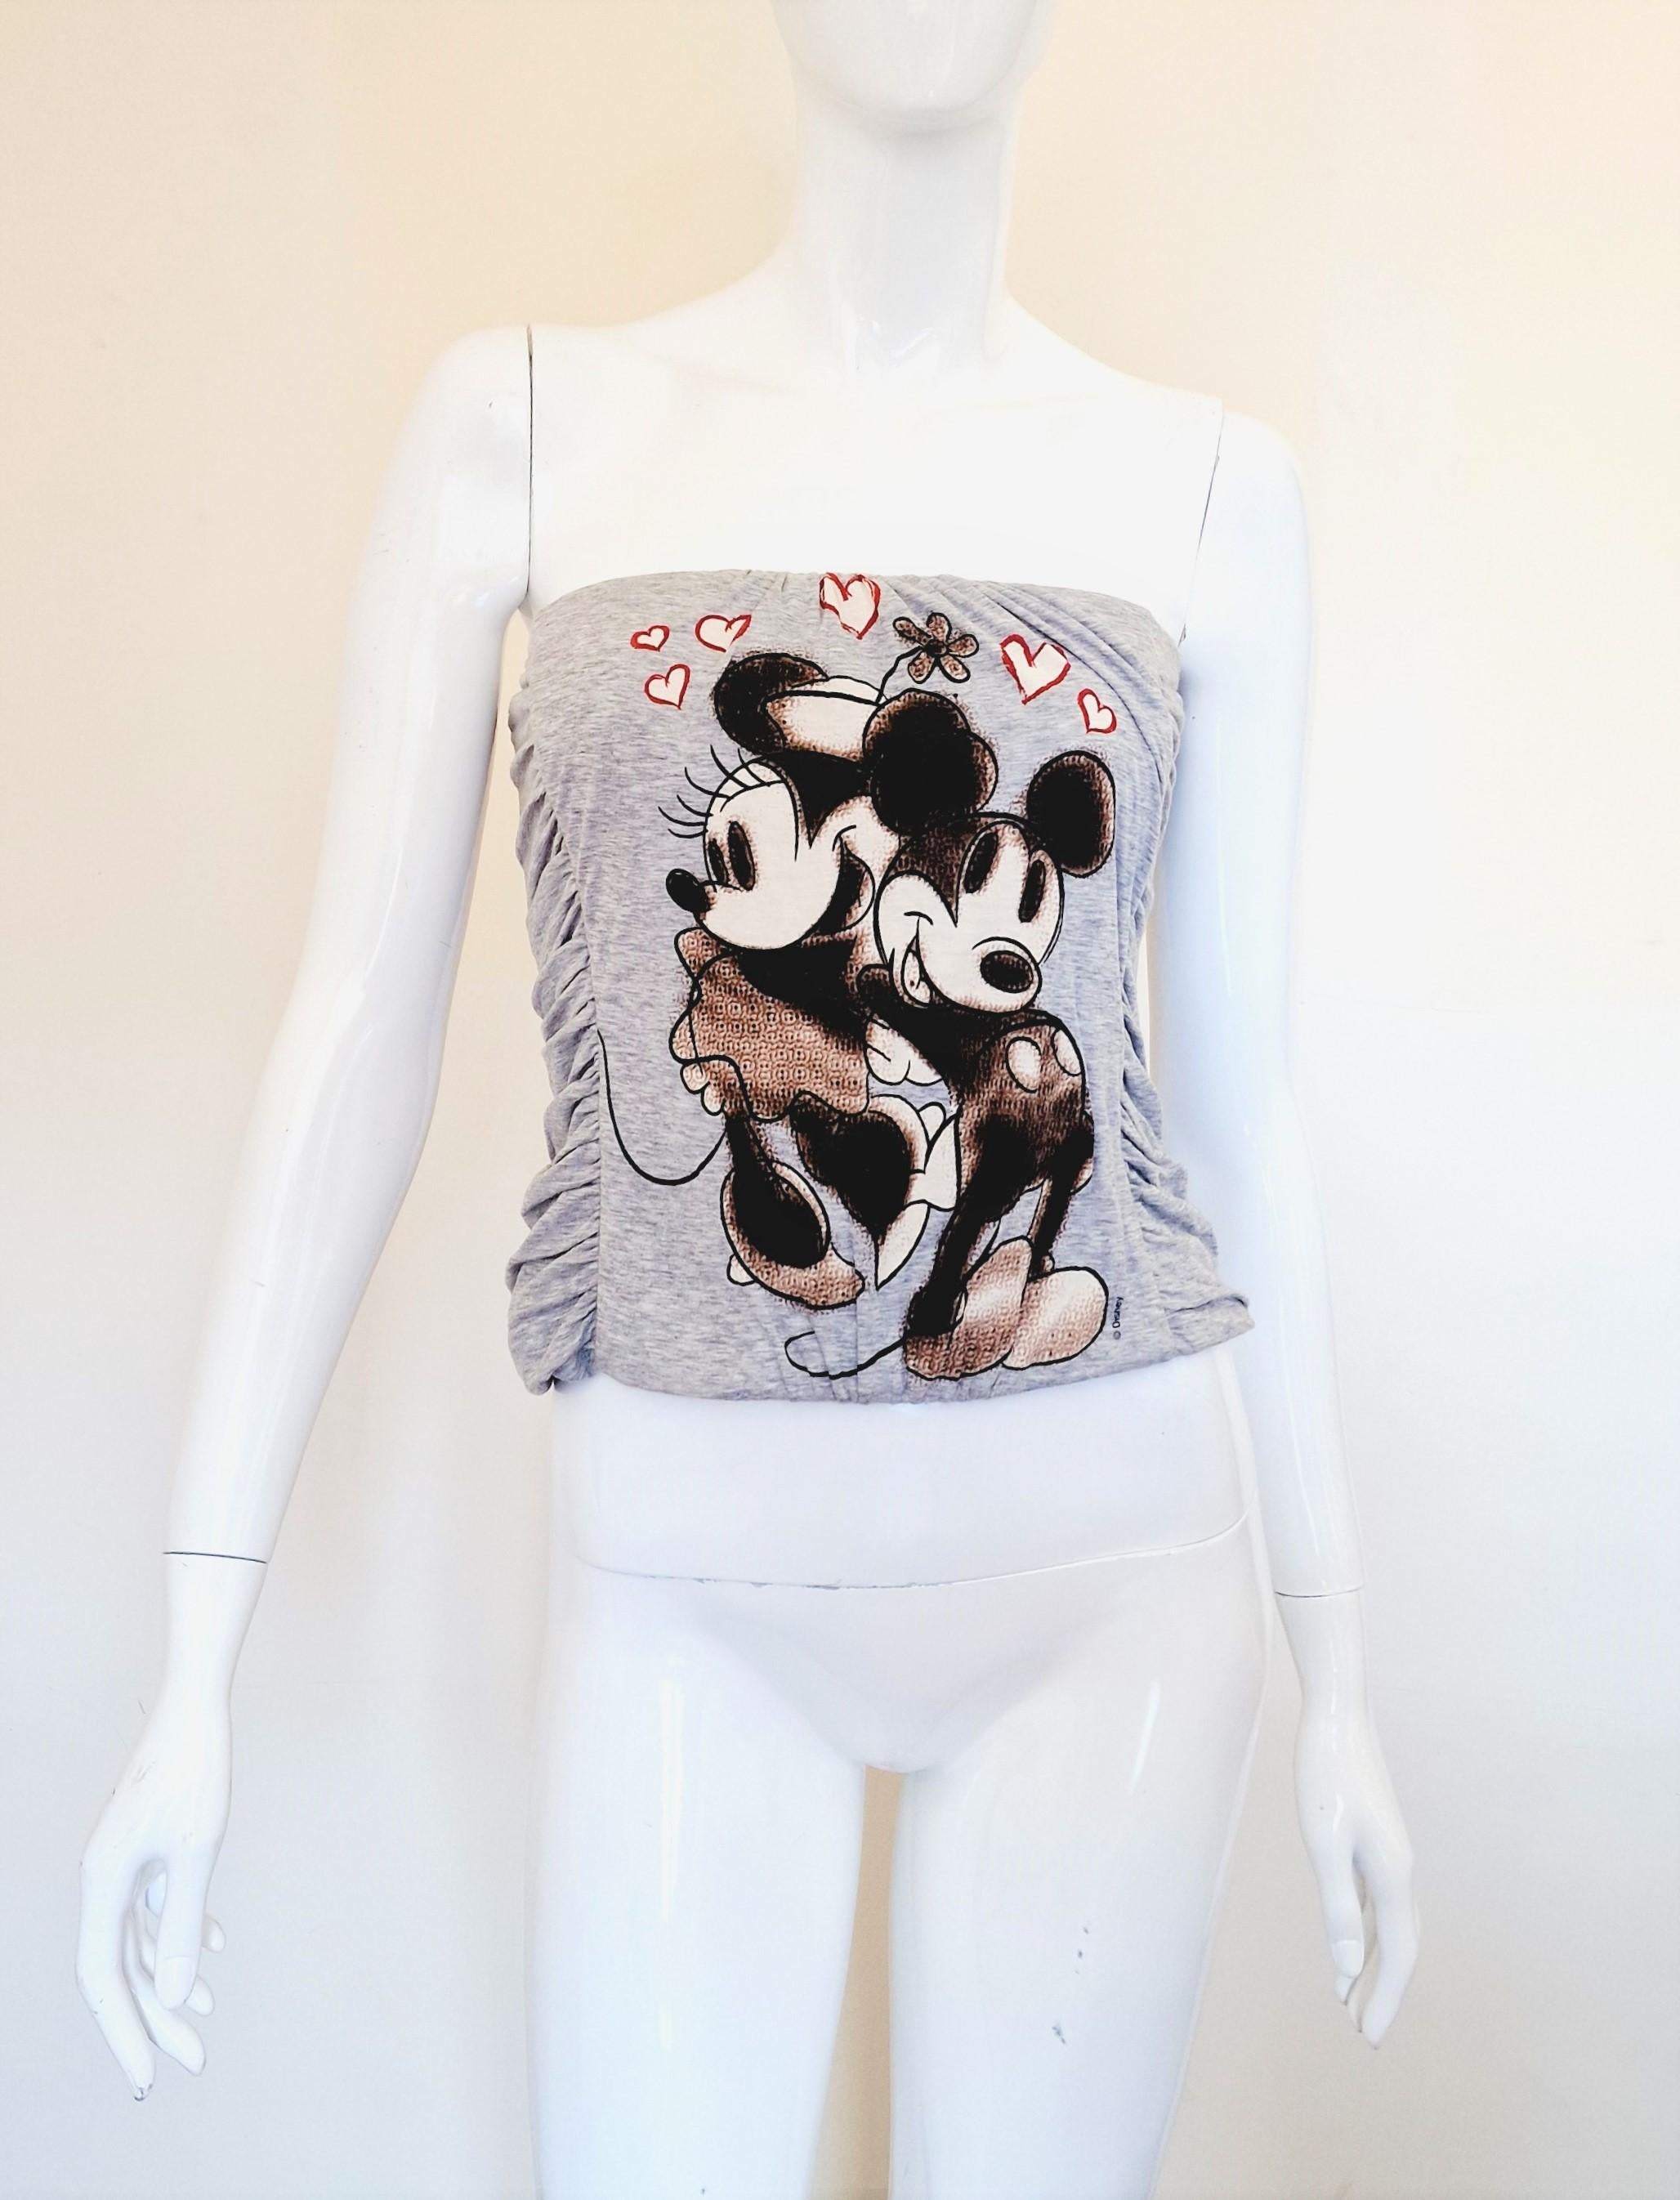 Seltene Dolce und Gabbana Minnie & Mickey Mouse Korsett mit Knochen!
Aus der Womens Fall Winter 2004/2005 Kollektion!

Hervorragender Zustand!

GRÖSSE
Passt von Größe klein bis mittel. Dehnbar!
Markierte Größe: IT40.
Bitte überprüfen Sie die